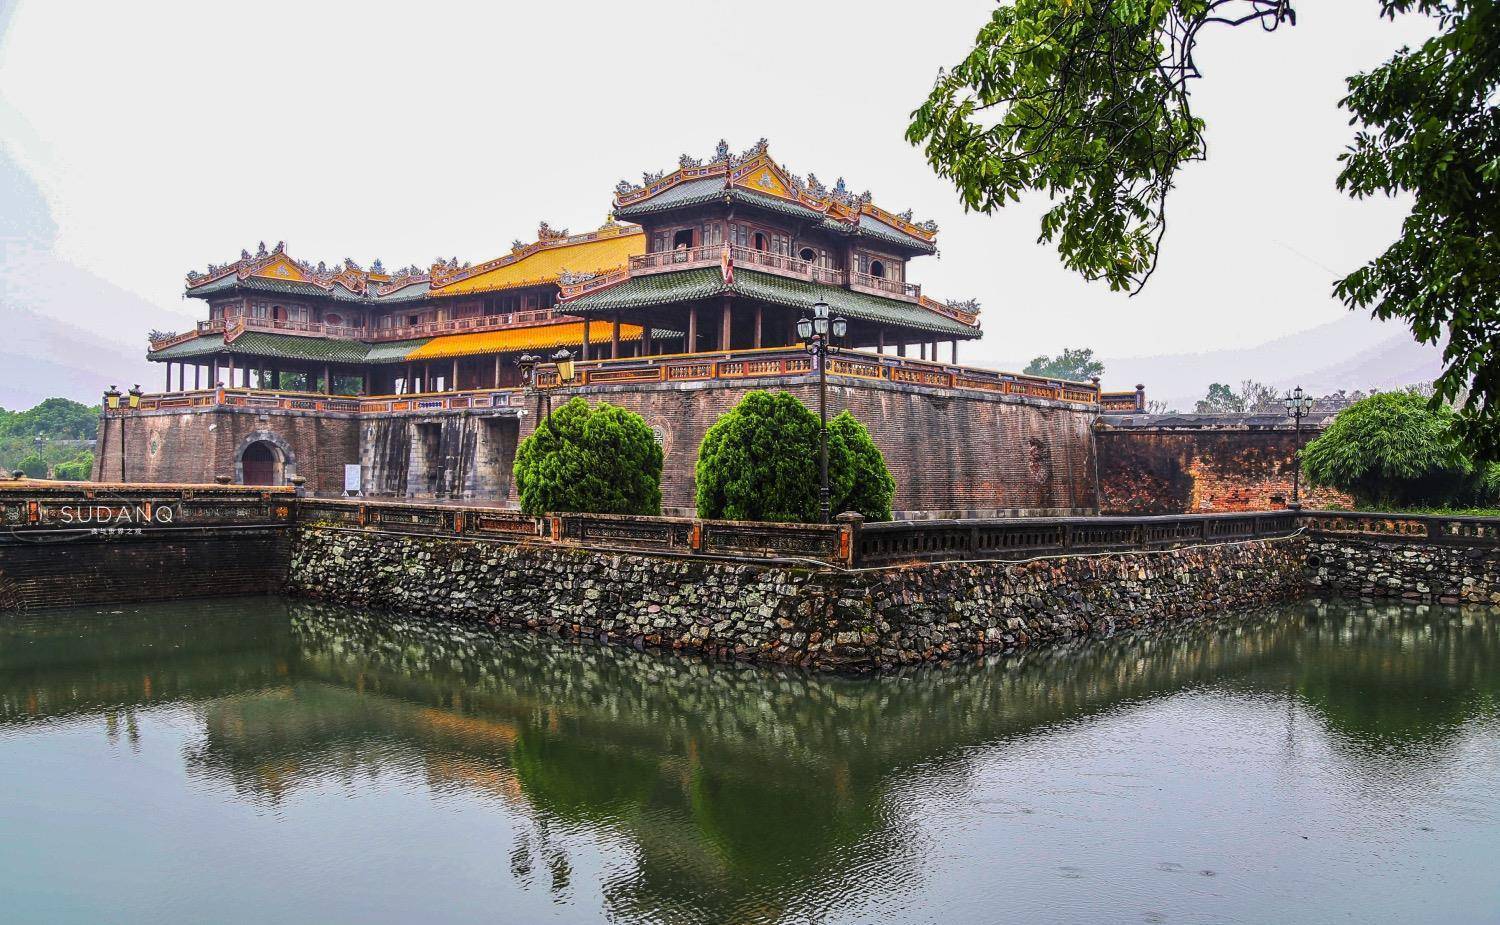 这座仿故宫而建的越南皇城,被评为世界遗产,到处可见中国汉字